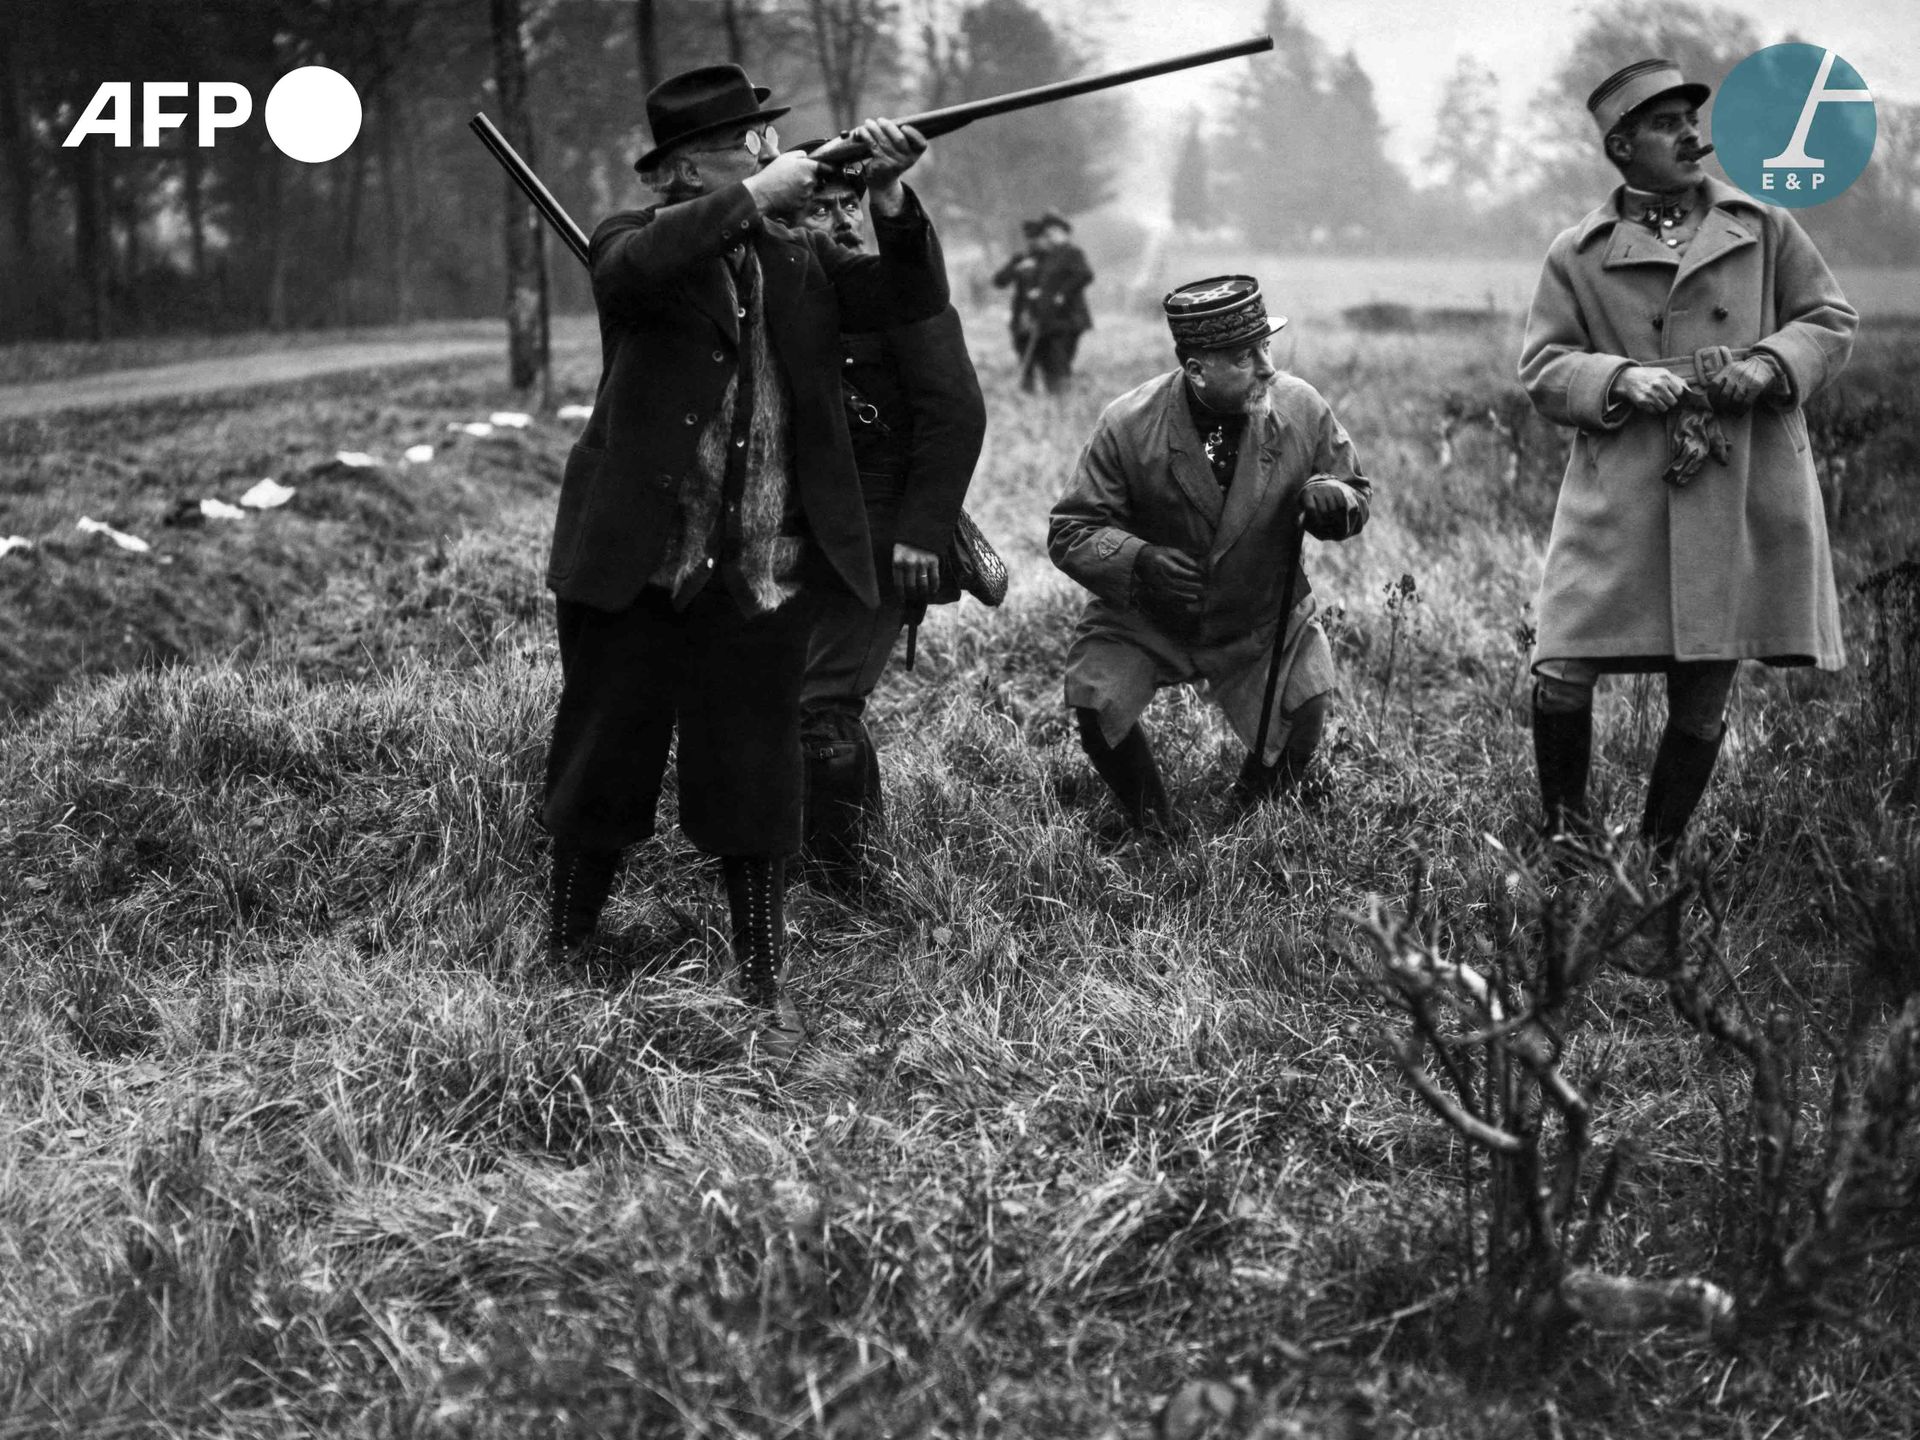 Null AFP

1932年，约瑟夫-欧仁-夏尔-卜拉康尼将军出席在朗布依埃举行的总统狩猎活动。

约瑟夫-欧仁-夏尔-布拉康尼将军出席1932年在朗布依埃举&hellip;